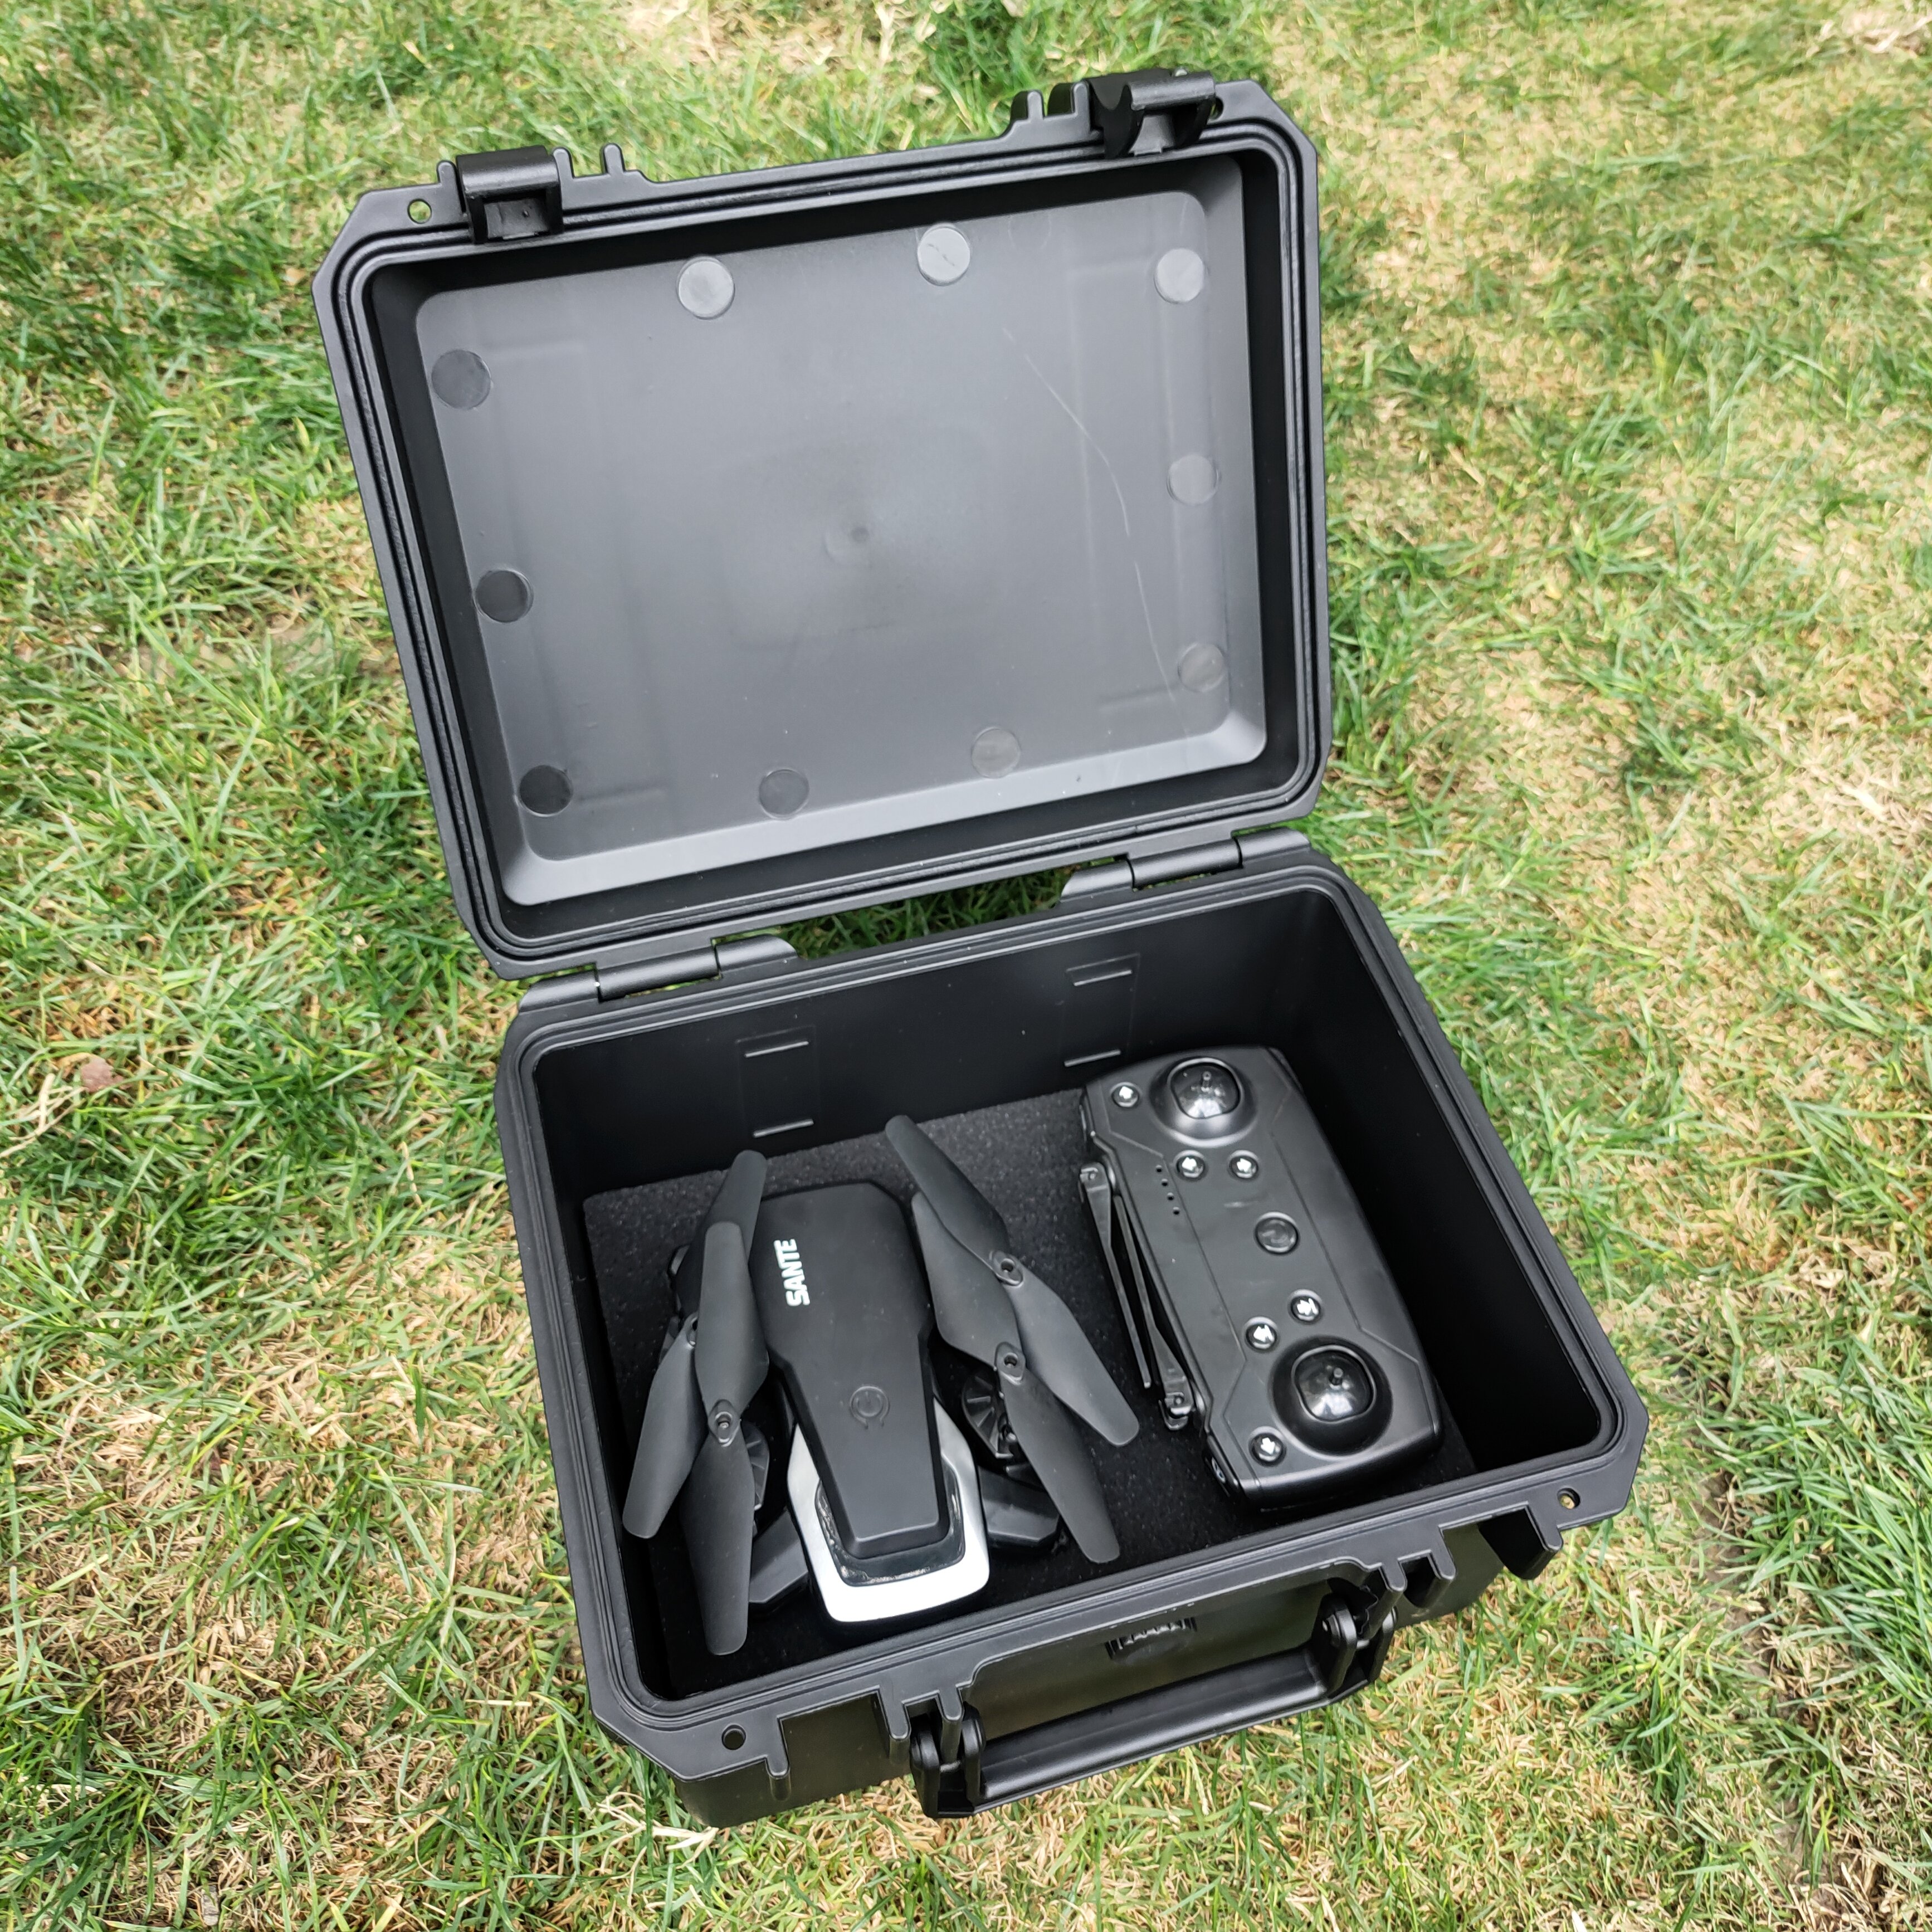 [BP-F2519][251*180*155mm]Hard Shell Waterproof Plastic Camera Case Dji Drone Carrying Case Waterproof Hard Plastic Case with Foam